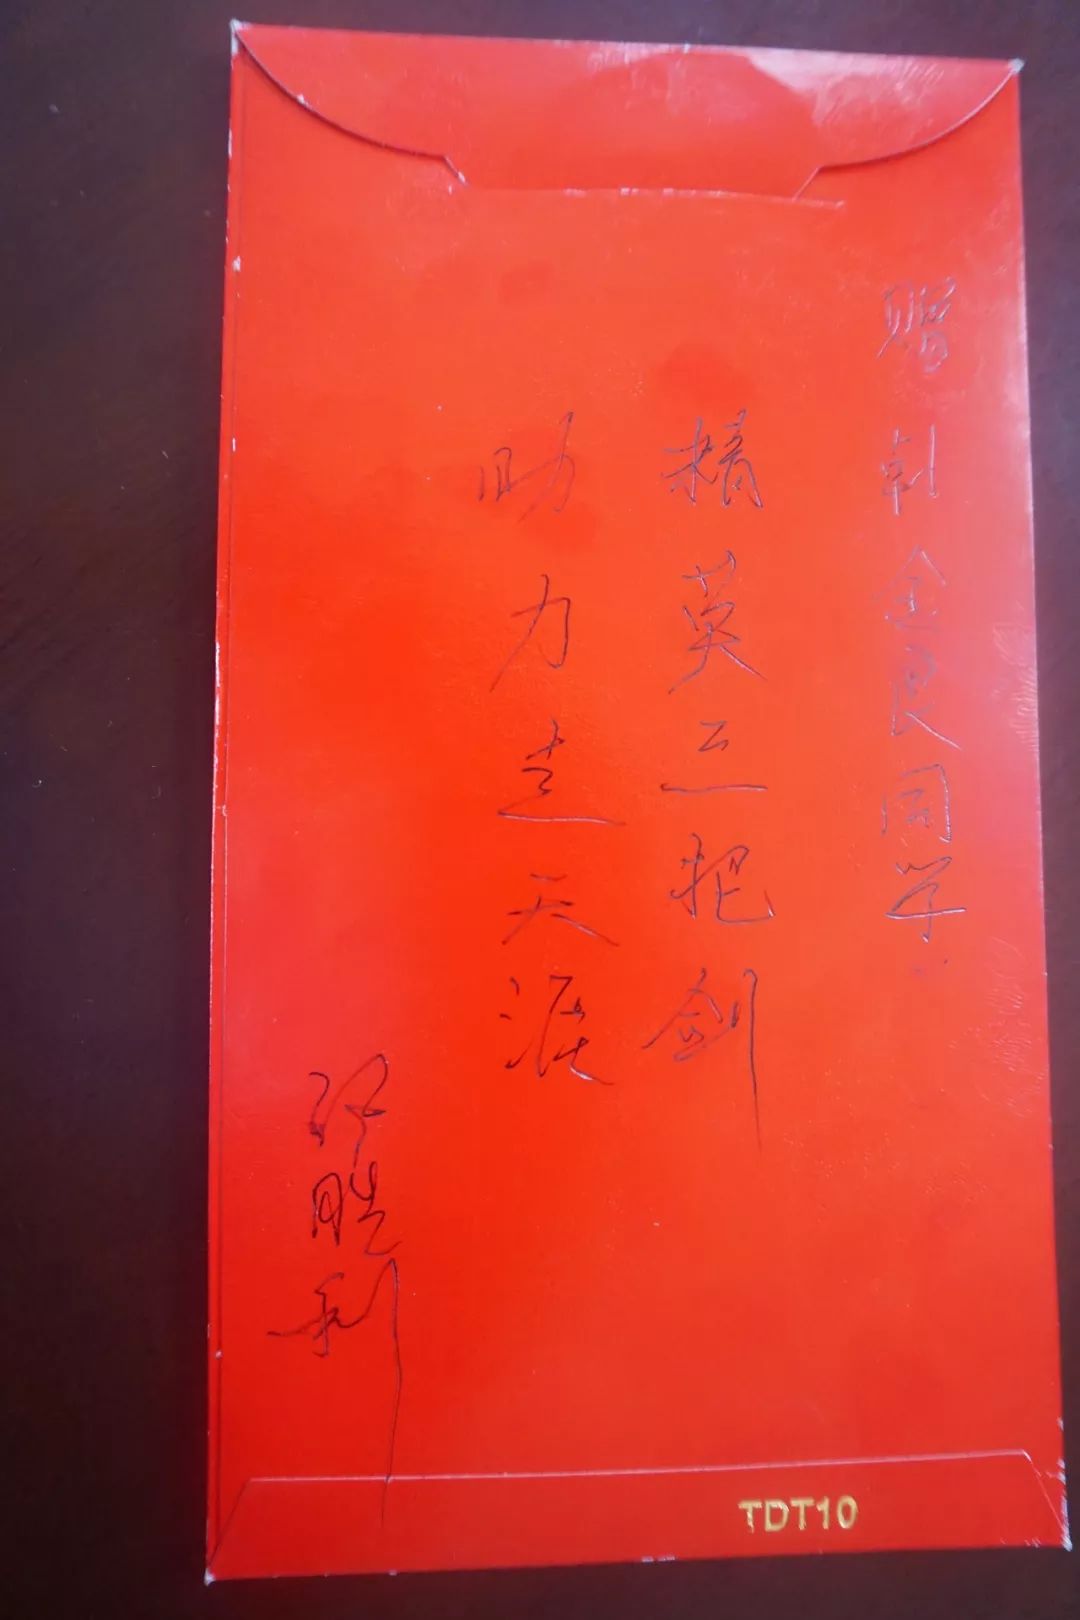 张胜利董事长在给韩金良的红包上题字据了解,去年民权高中的学生郭威